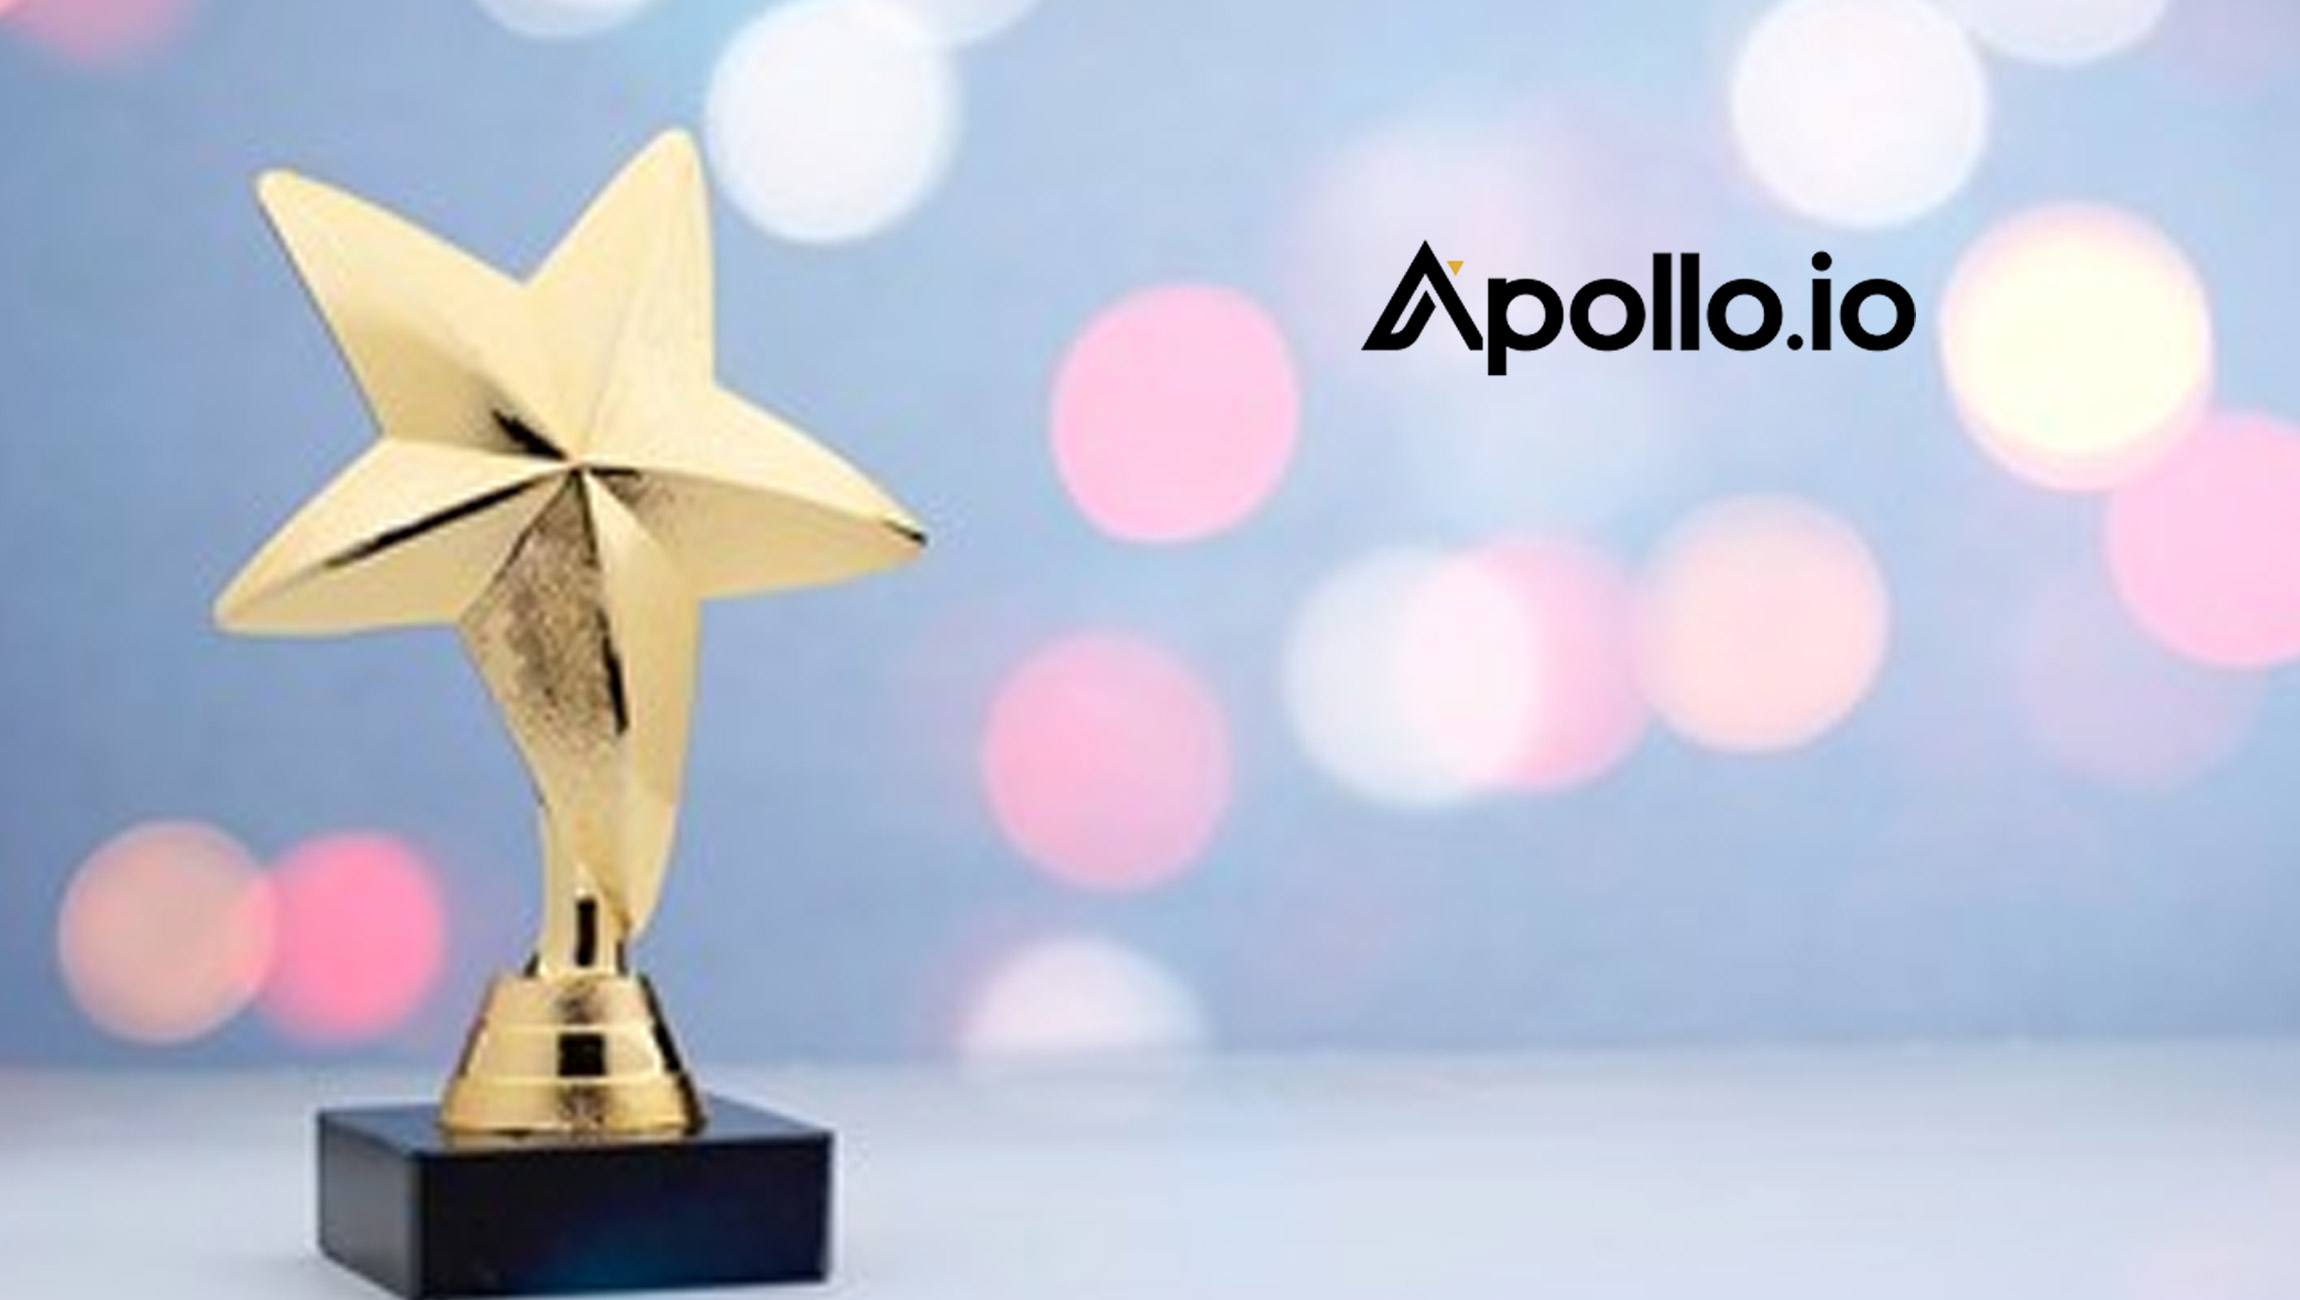 Apollo.io Brings Home the Gold in the 14th Annual 2022 Golden Bridge Awards